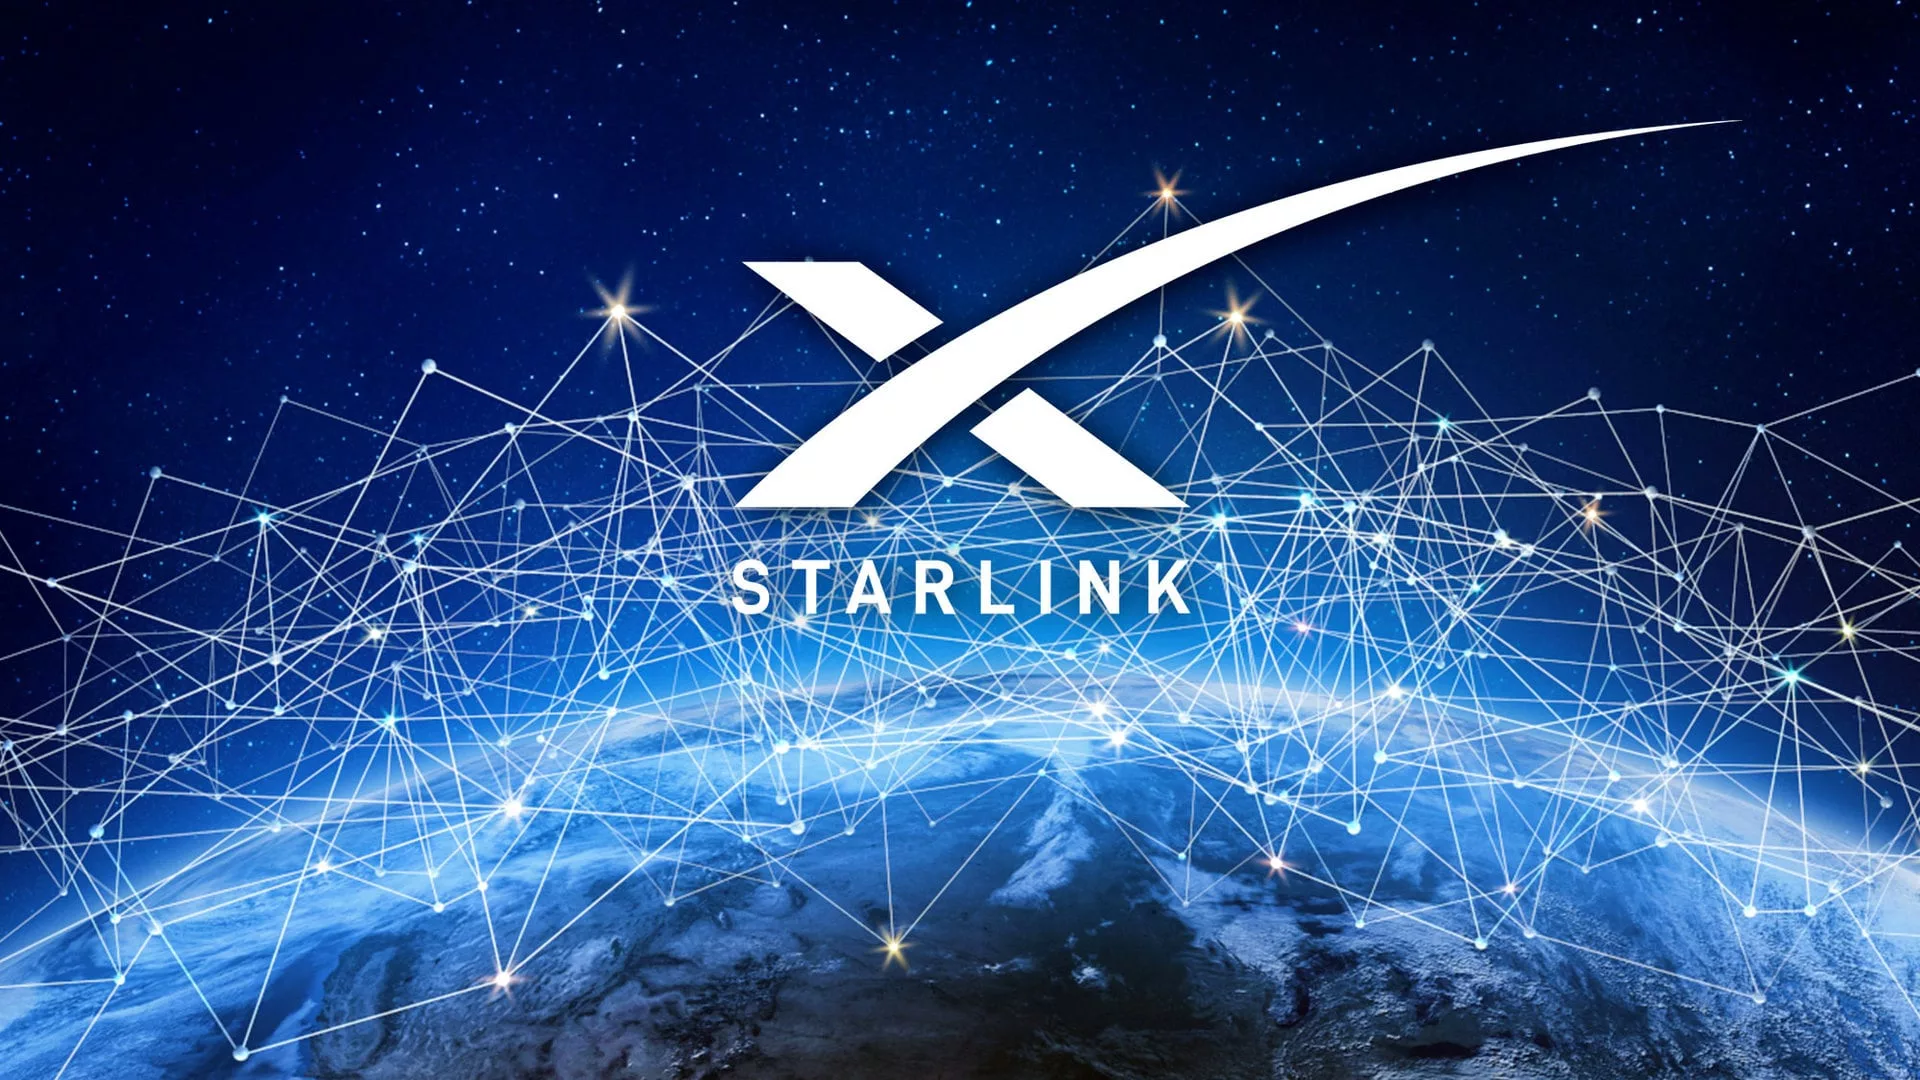 starlink satellites eliminate wired internet 1 jpg